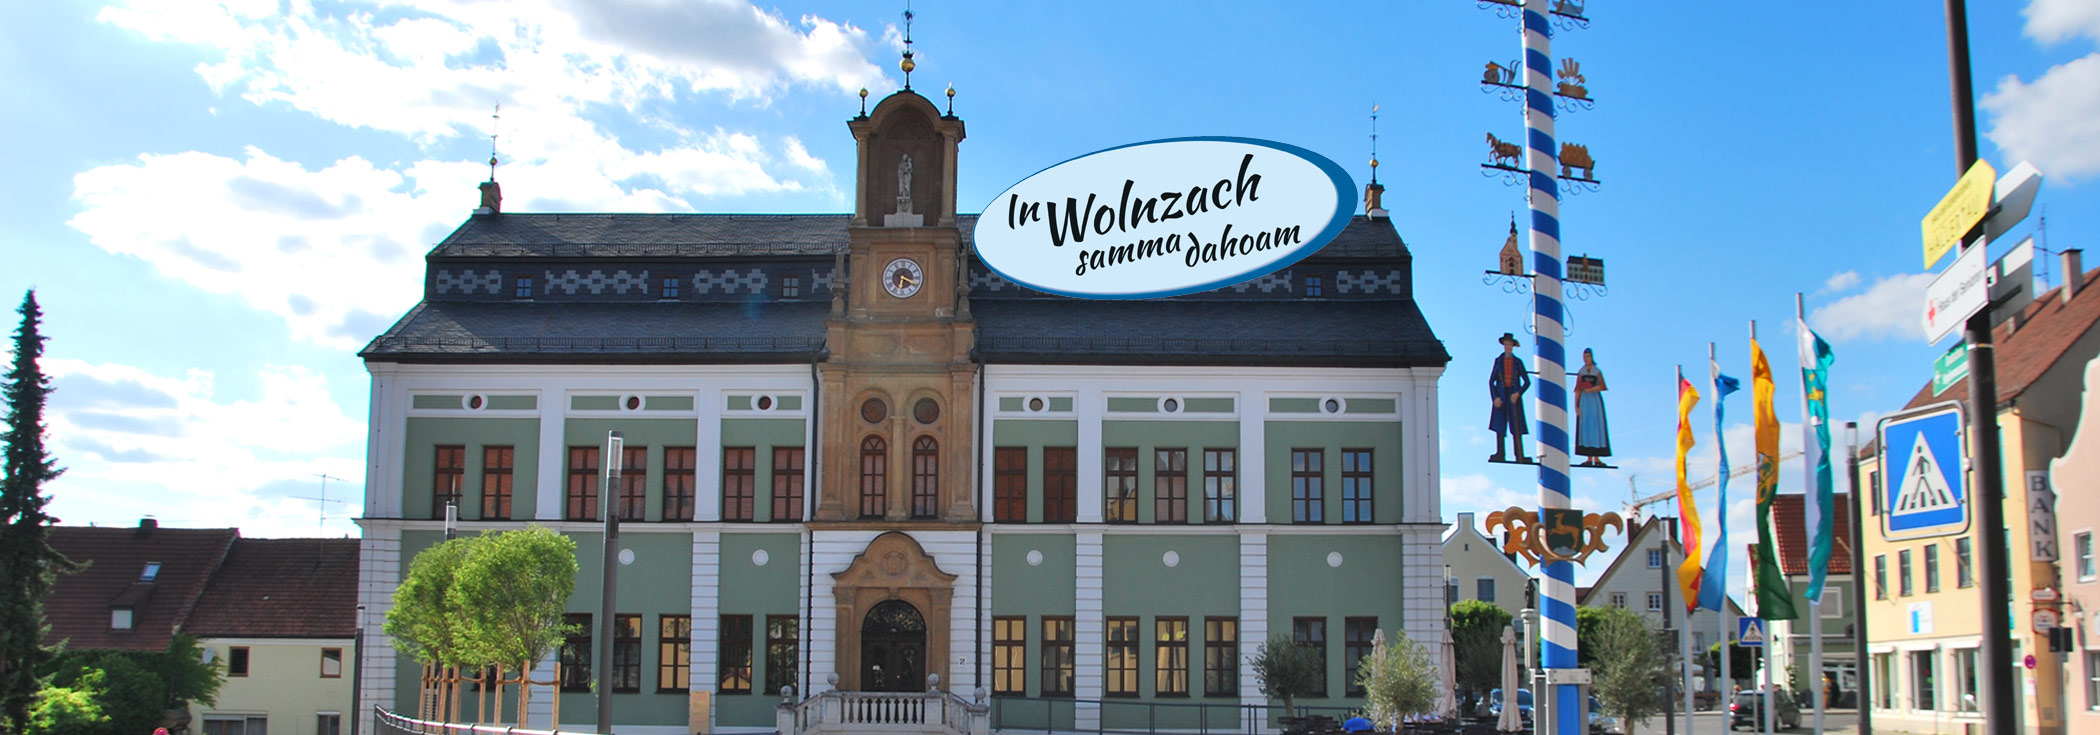 Rathaus in Wolnzach